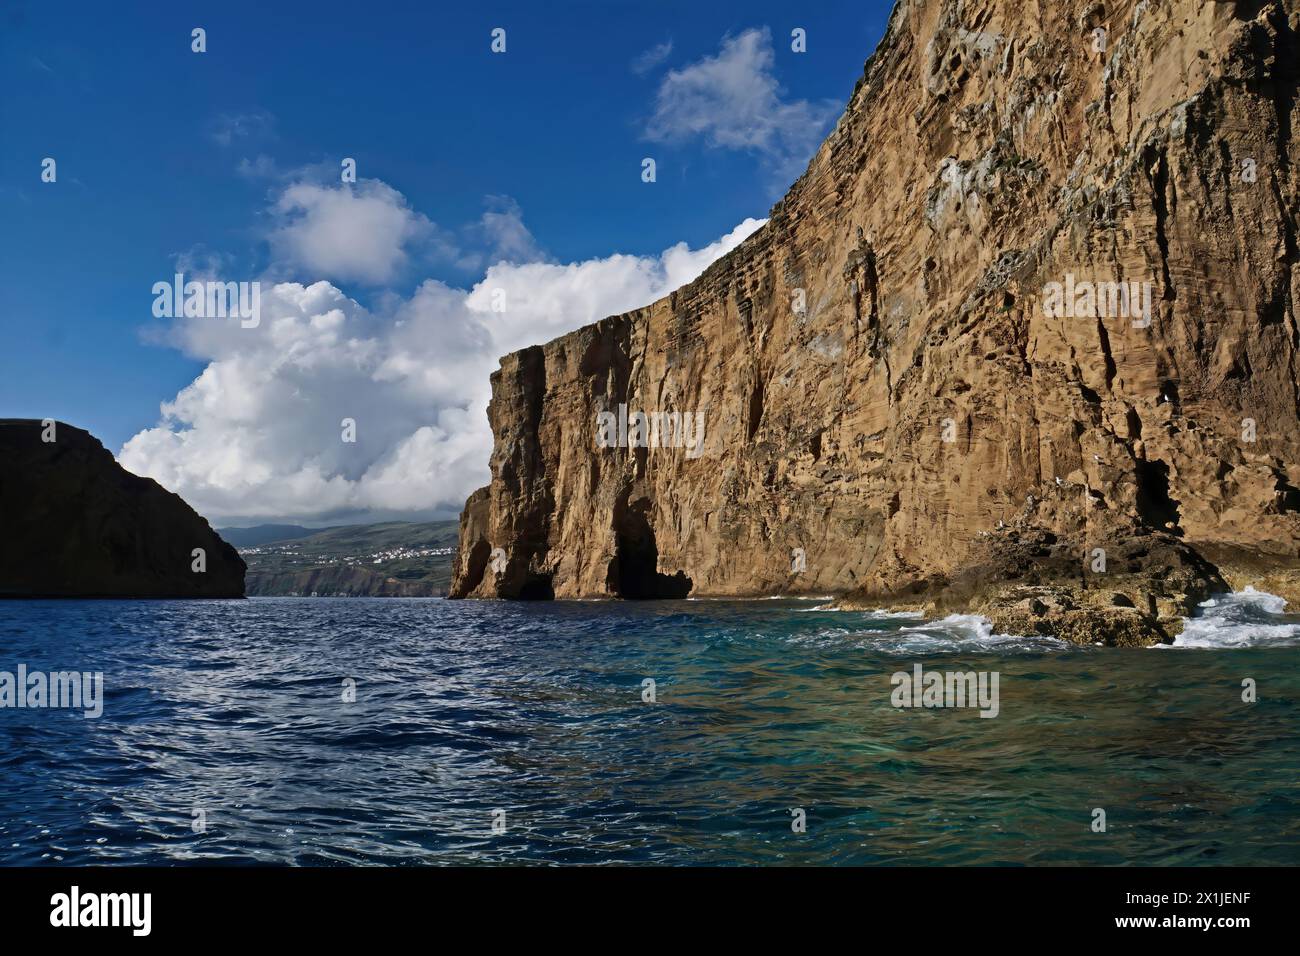 Detalhes da viagem de barco para o Ilhéu das Cabras em Ilha Terceira - Azzorre Foto Stock